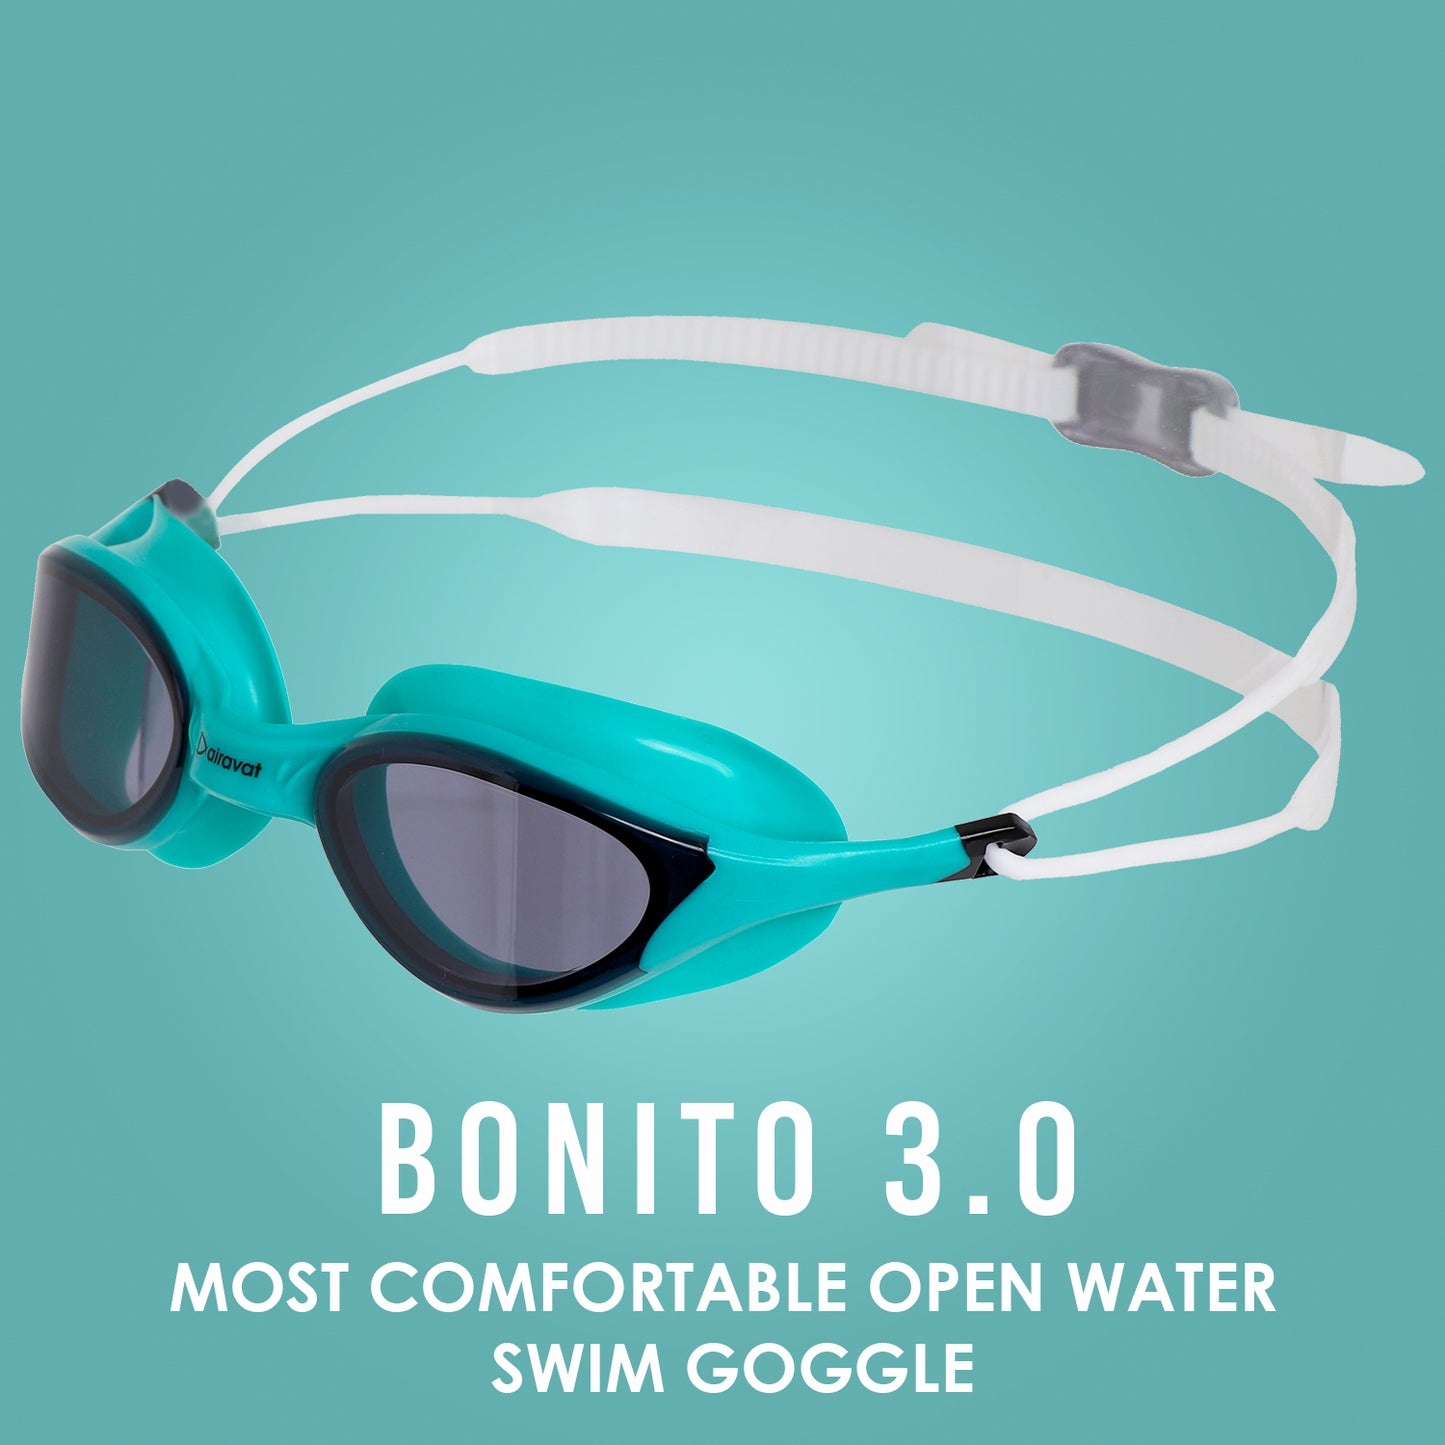 BONITO 3.0